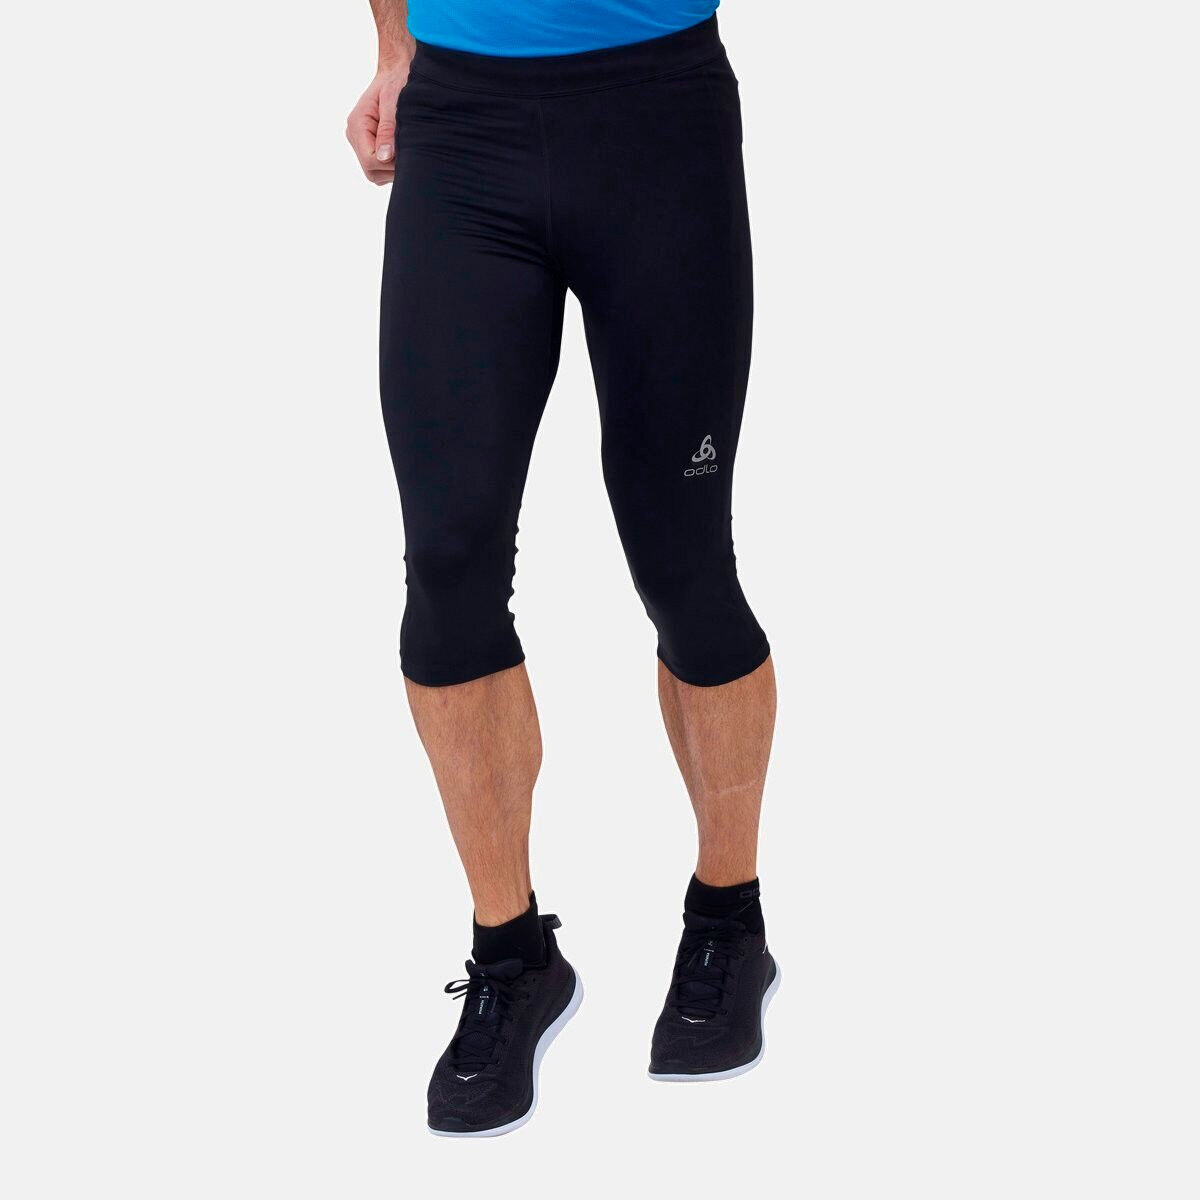 Odlo 3/4 Essential - Running leggings - Men's